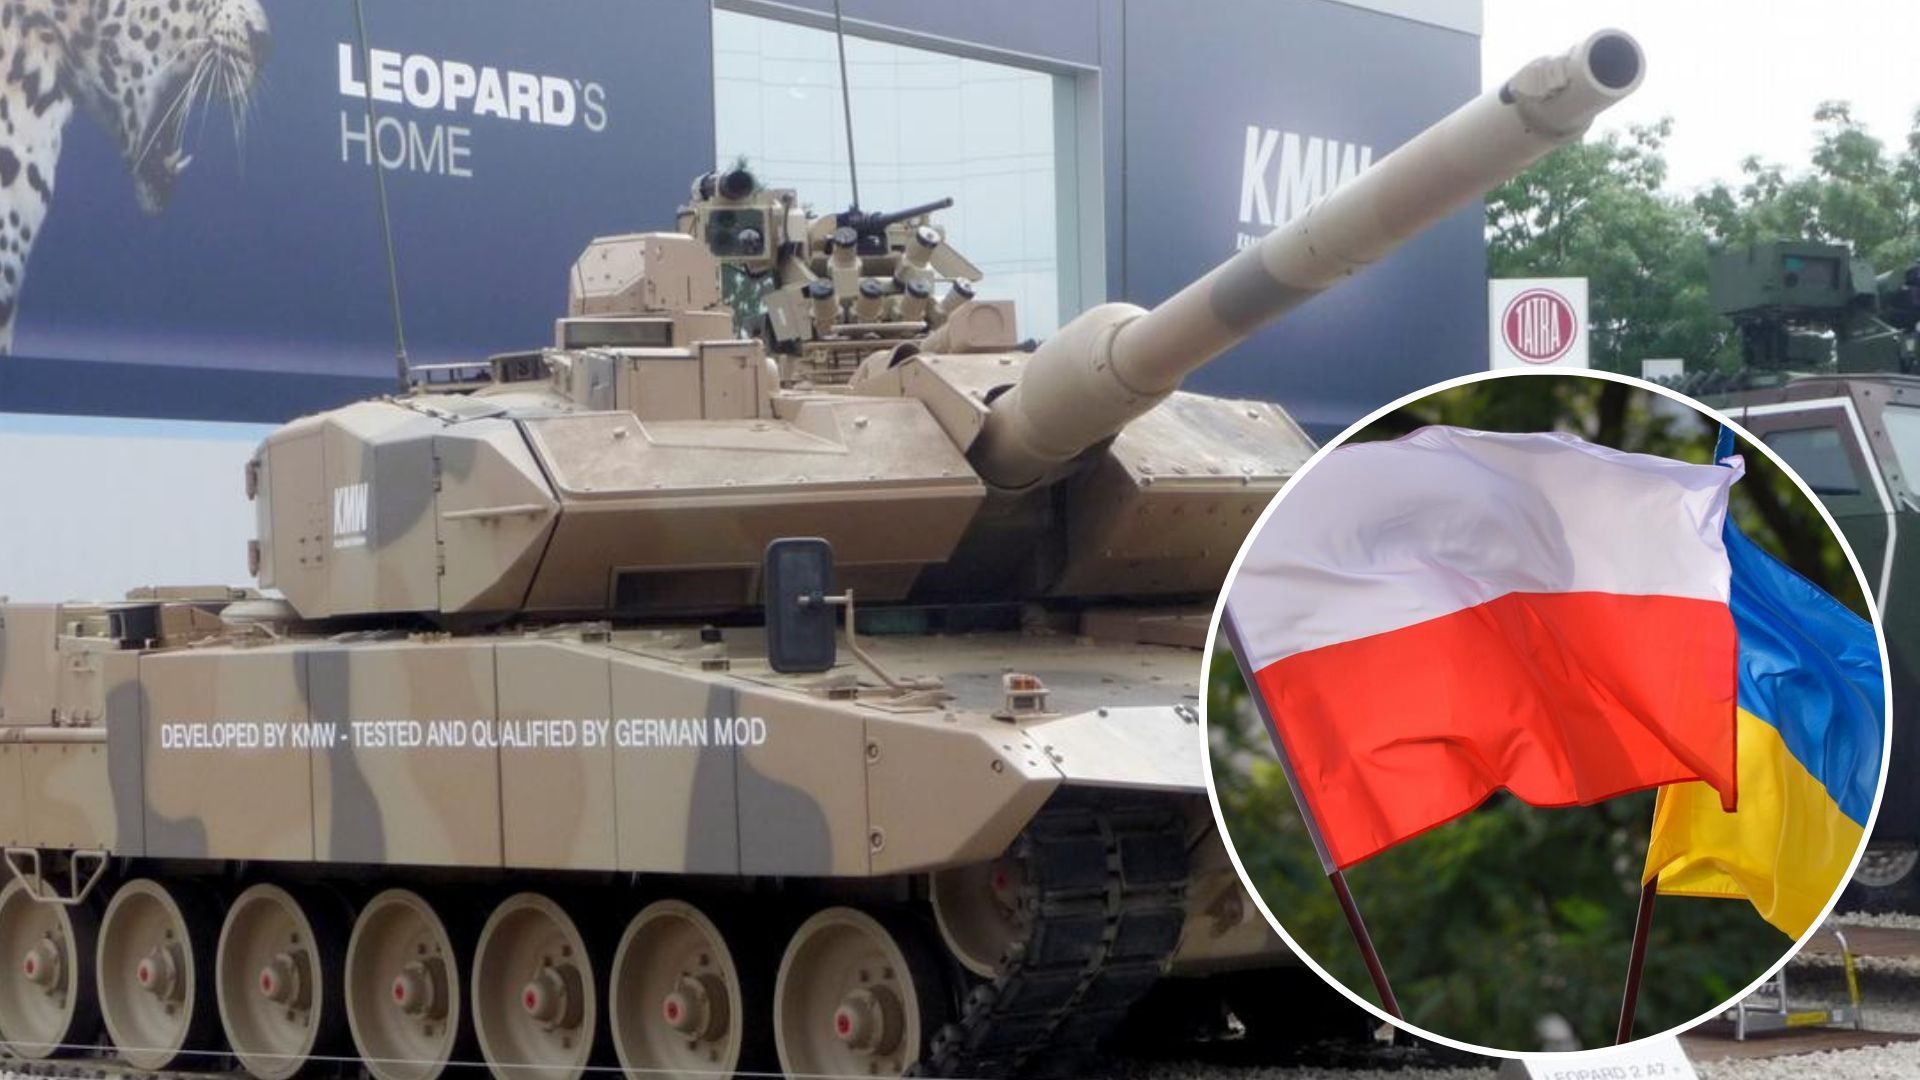 Leopard для Украины - Польша отправила еще 10 танков - 24 Канал